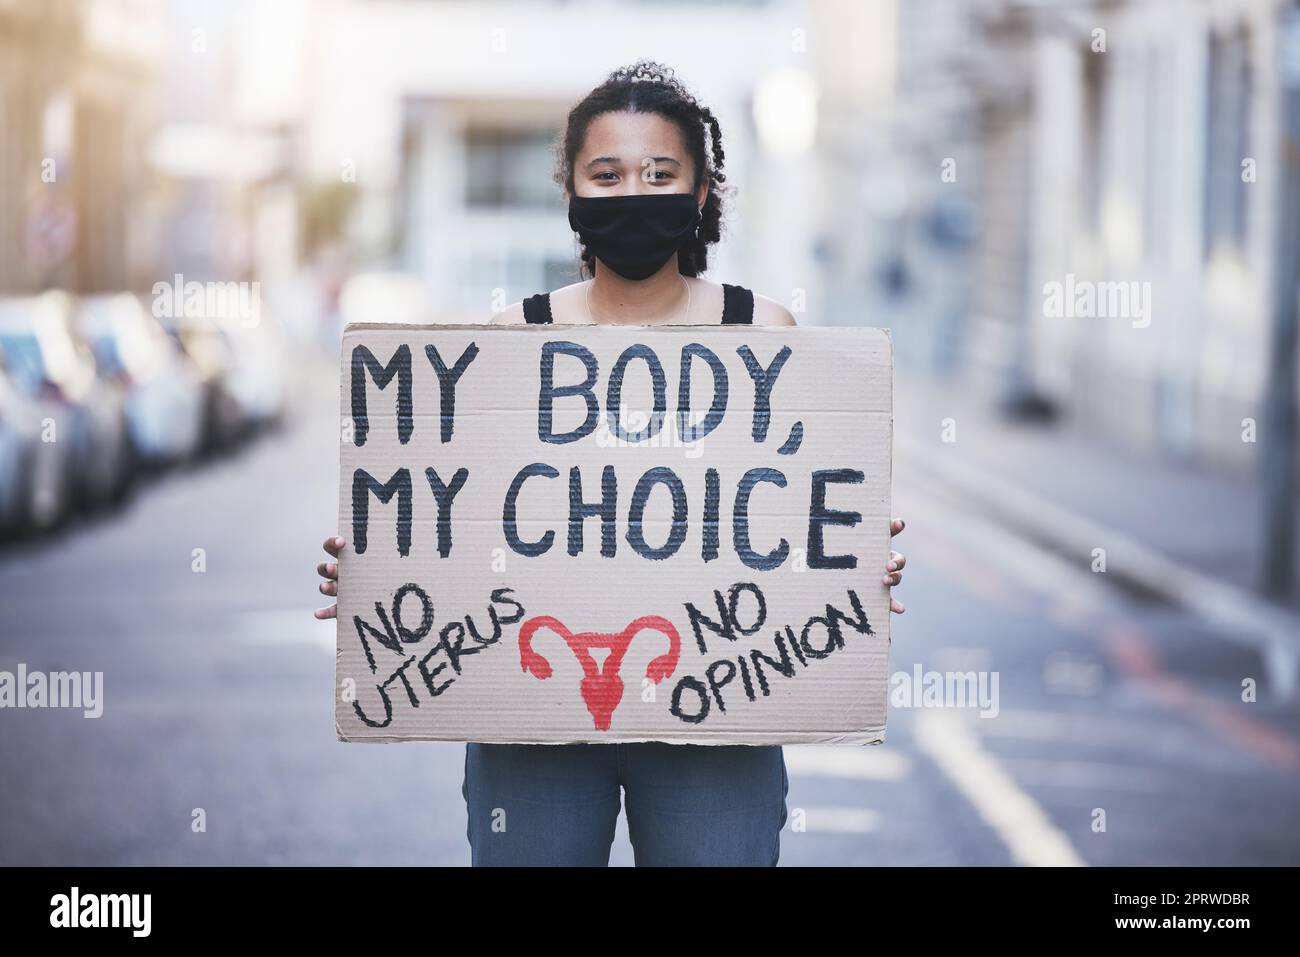 Protestfrau, Abtreibungswahl oder Gesundheitsfürsorge Pappposter in einer Stadtstraße für Körper-, Menschenrechts- und Rechtspolitik. Frauenstimme, Meinung oder Schlagwörter für Gleichberechtigung mit Gesichtsmaske Porträt Stockfoto